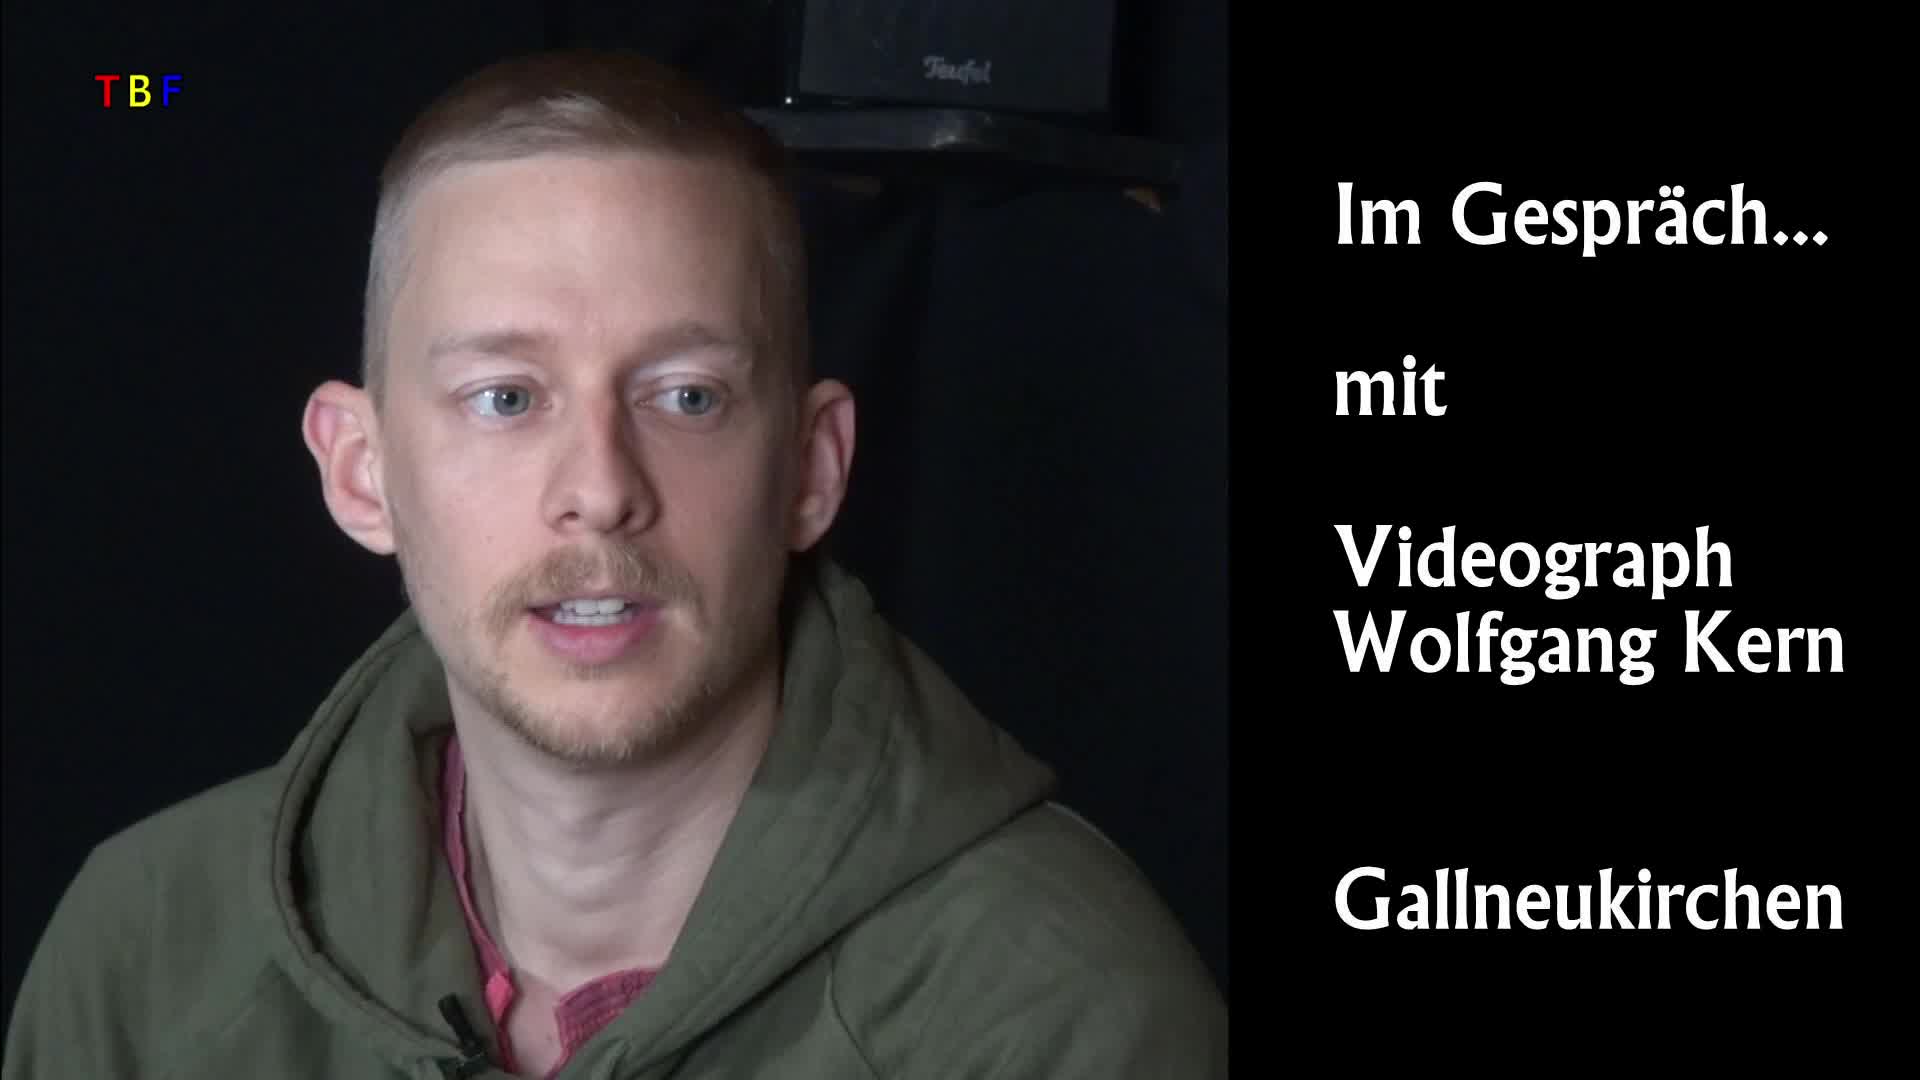 Im Gespräch mit Videograph Wolfgang Kern